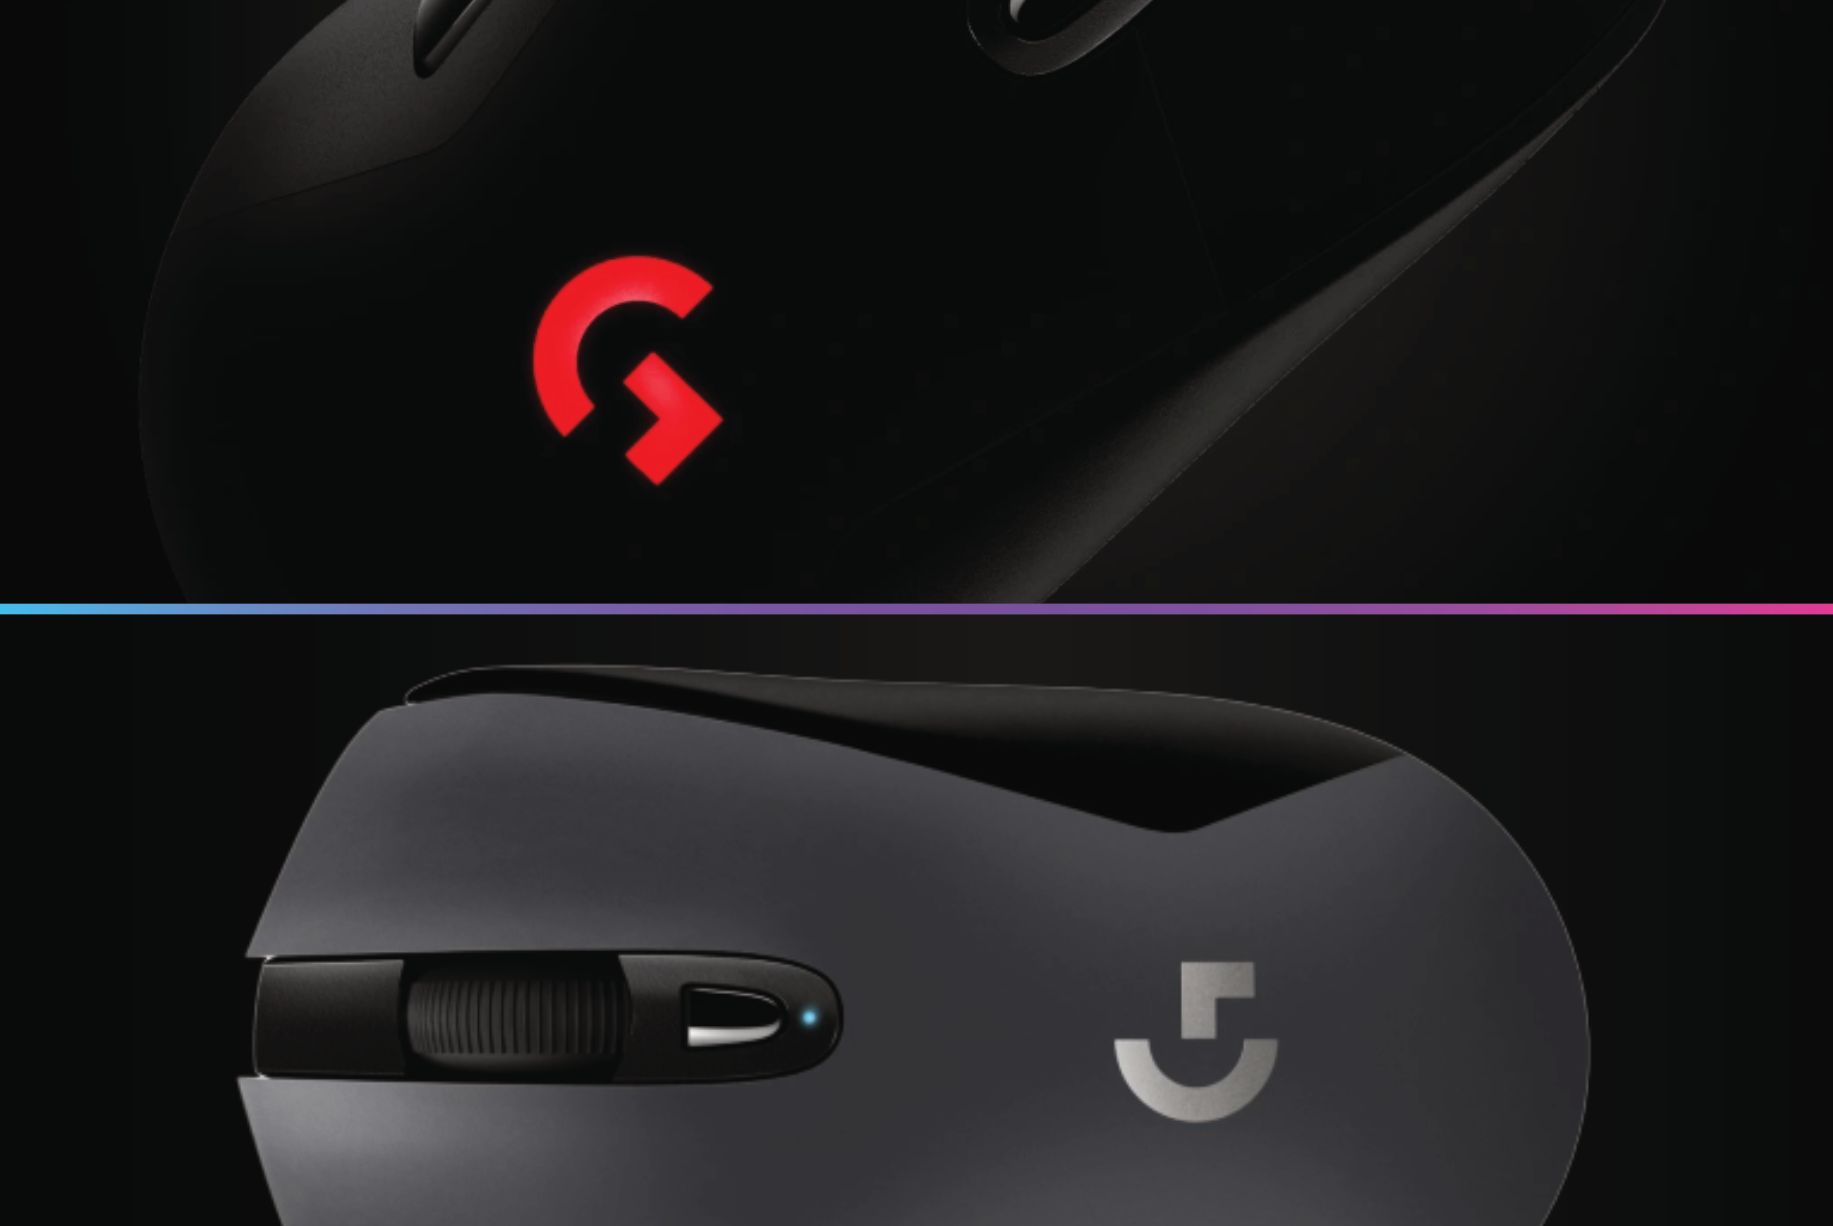 Logitech G403 vs G603 Wireless Mouse Comparison